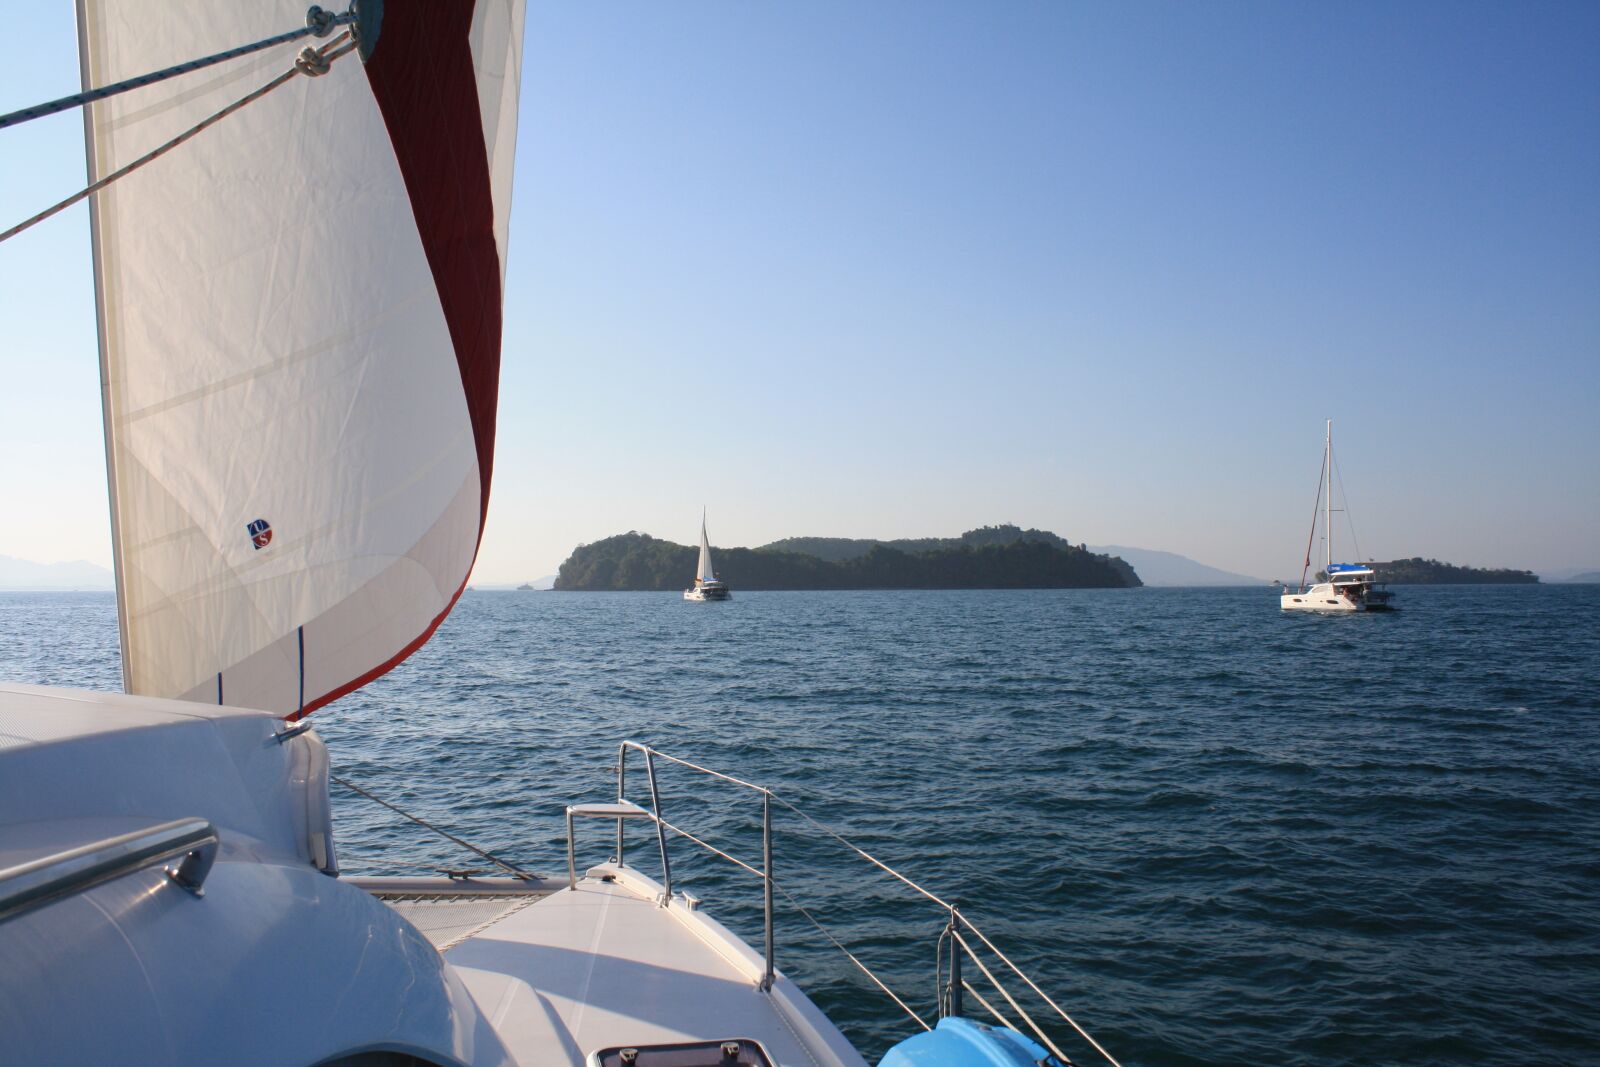 Canon EOS 1000D (EOS Digital Rebel XS / EOS Kiss F) sample photo. Yacht, catamaran, sail photography